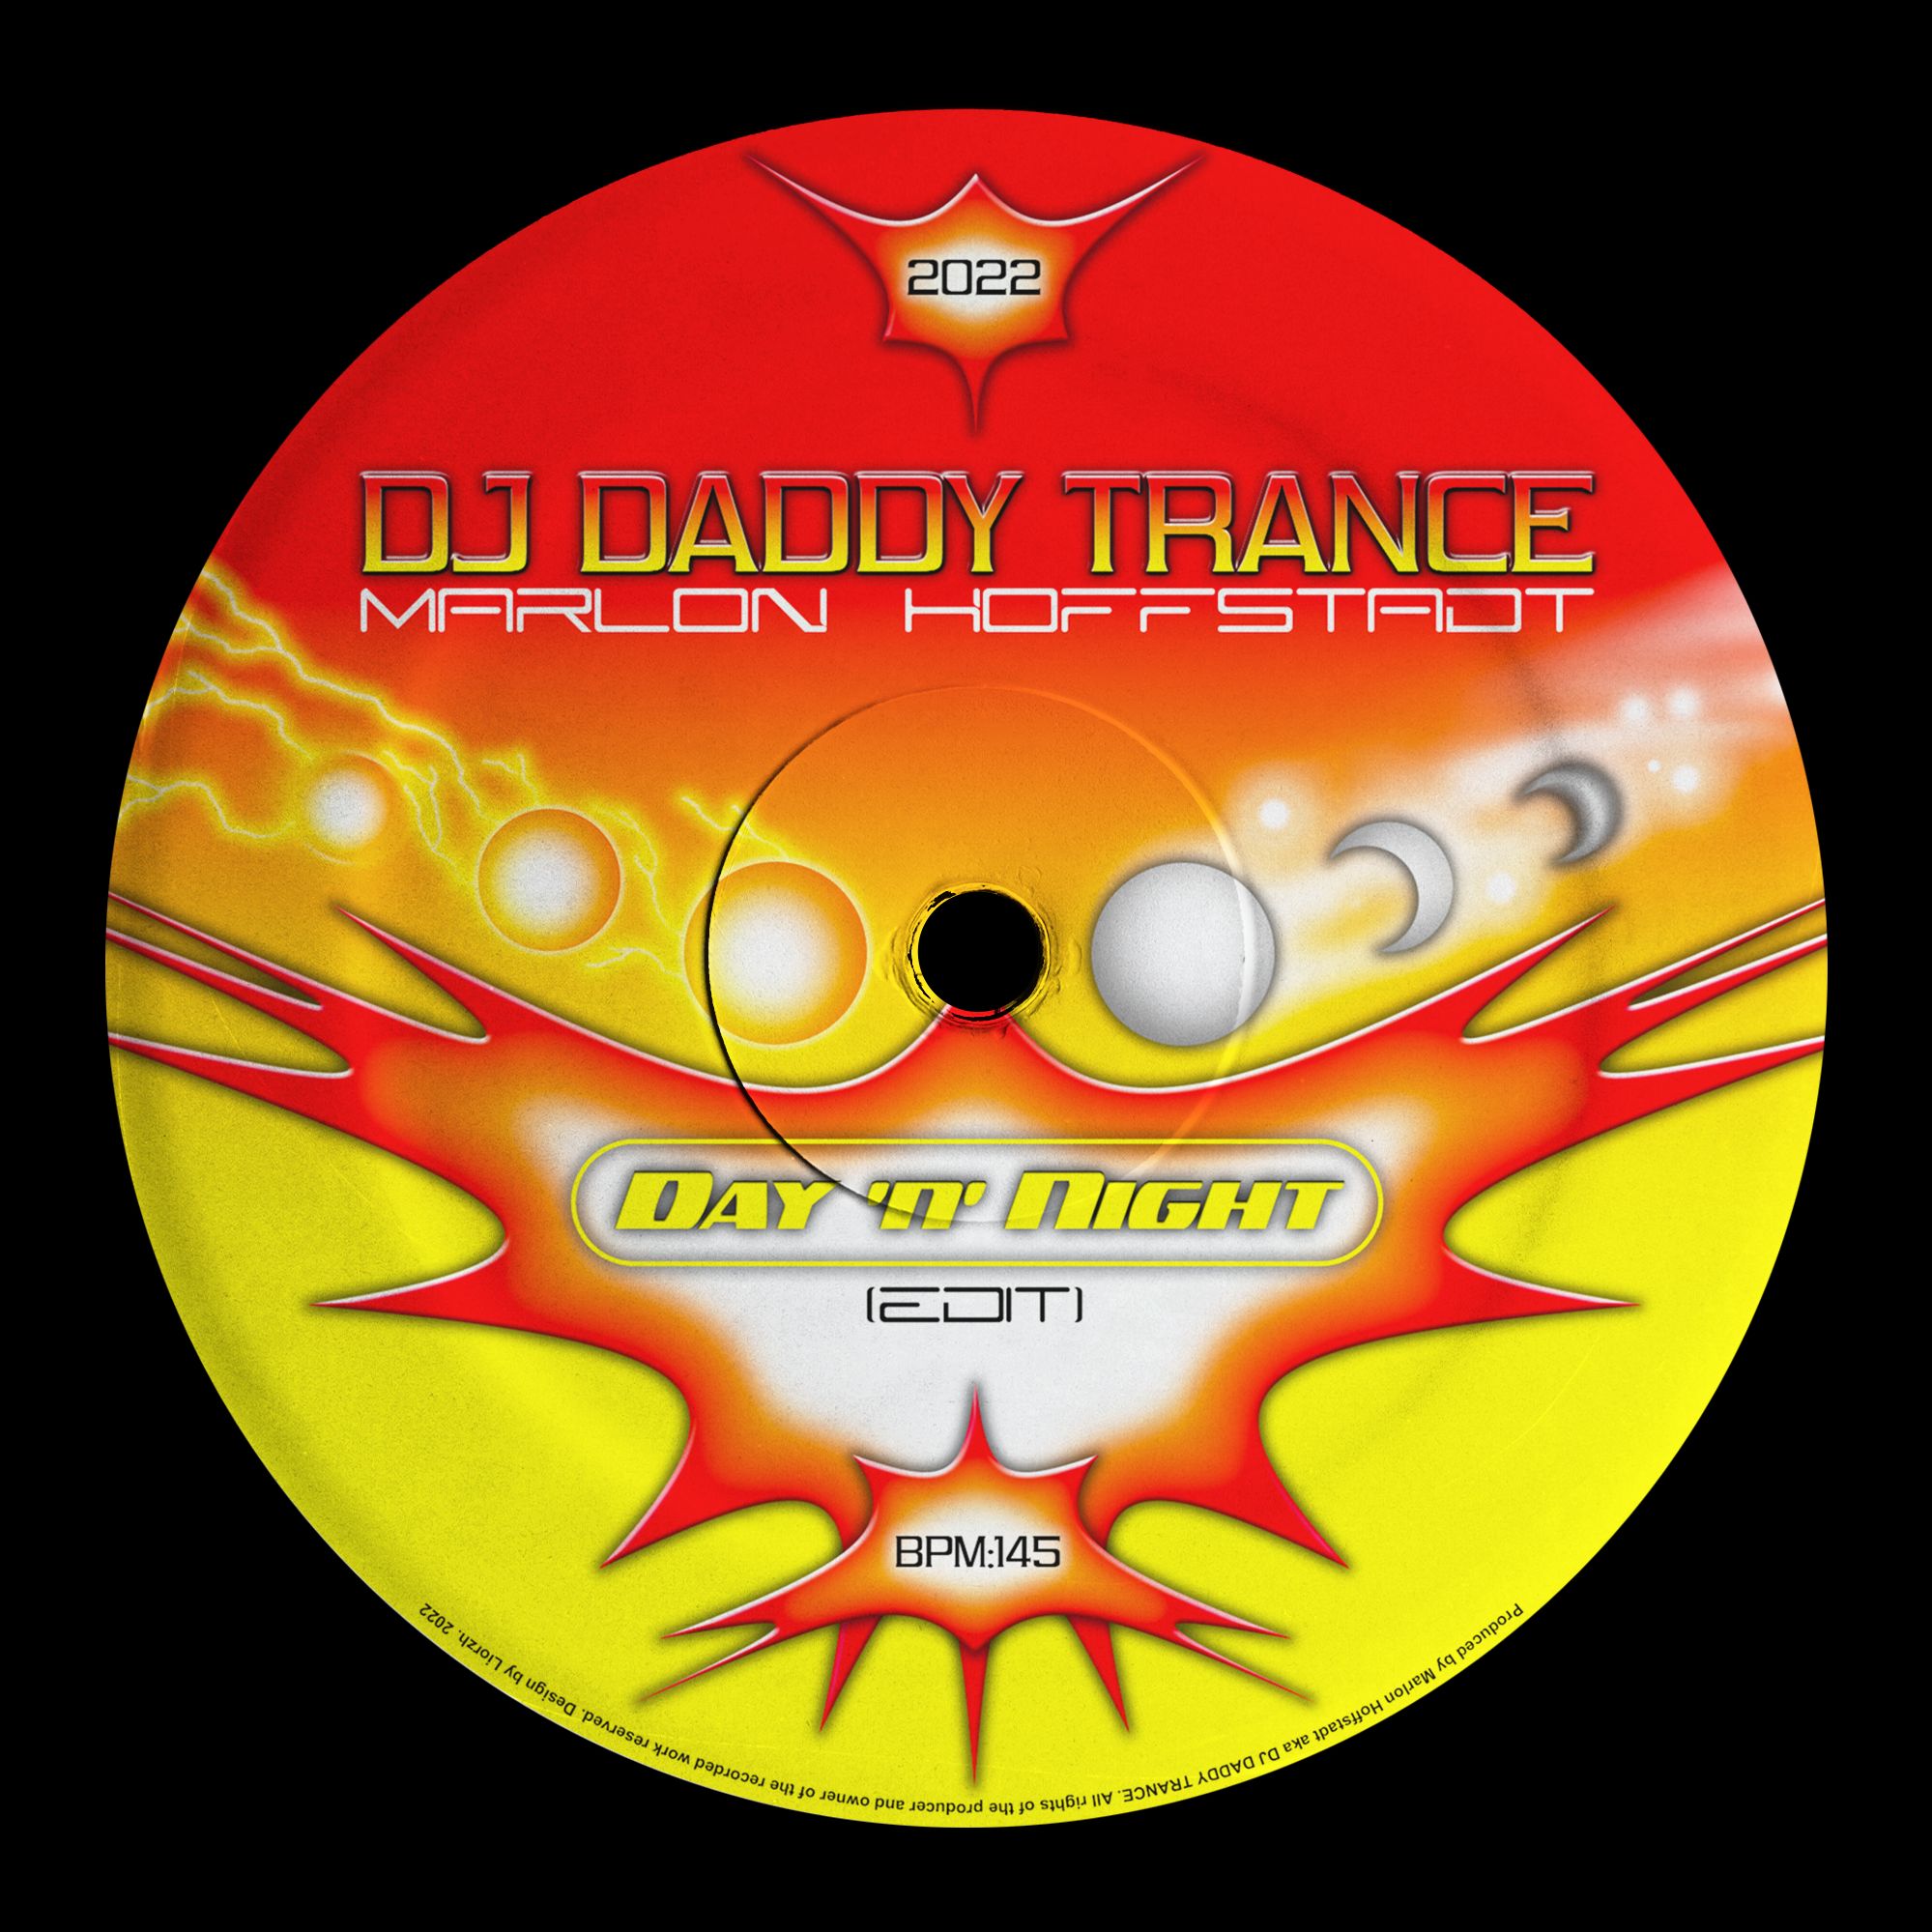 Descarca DJ Daddy Trance - Day 'n' Night